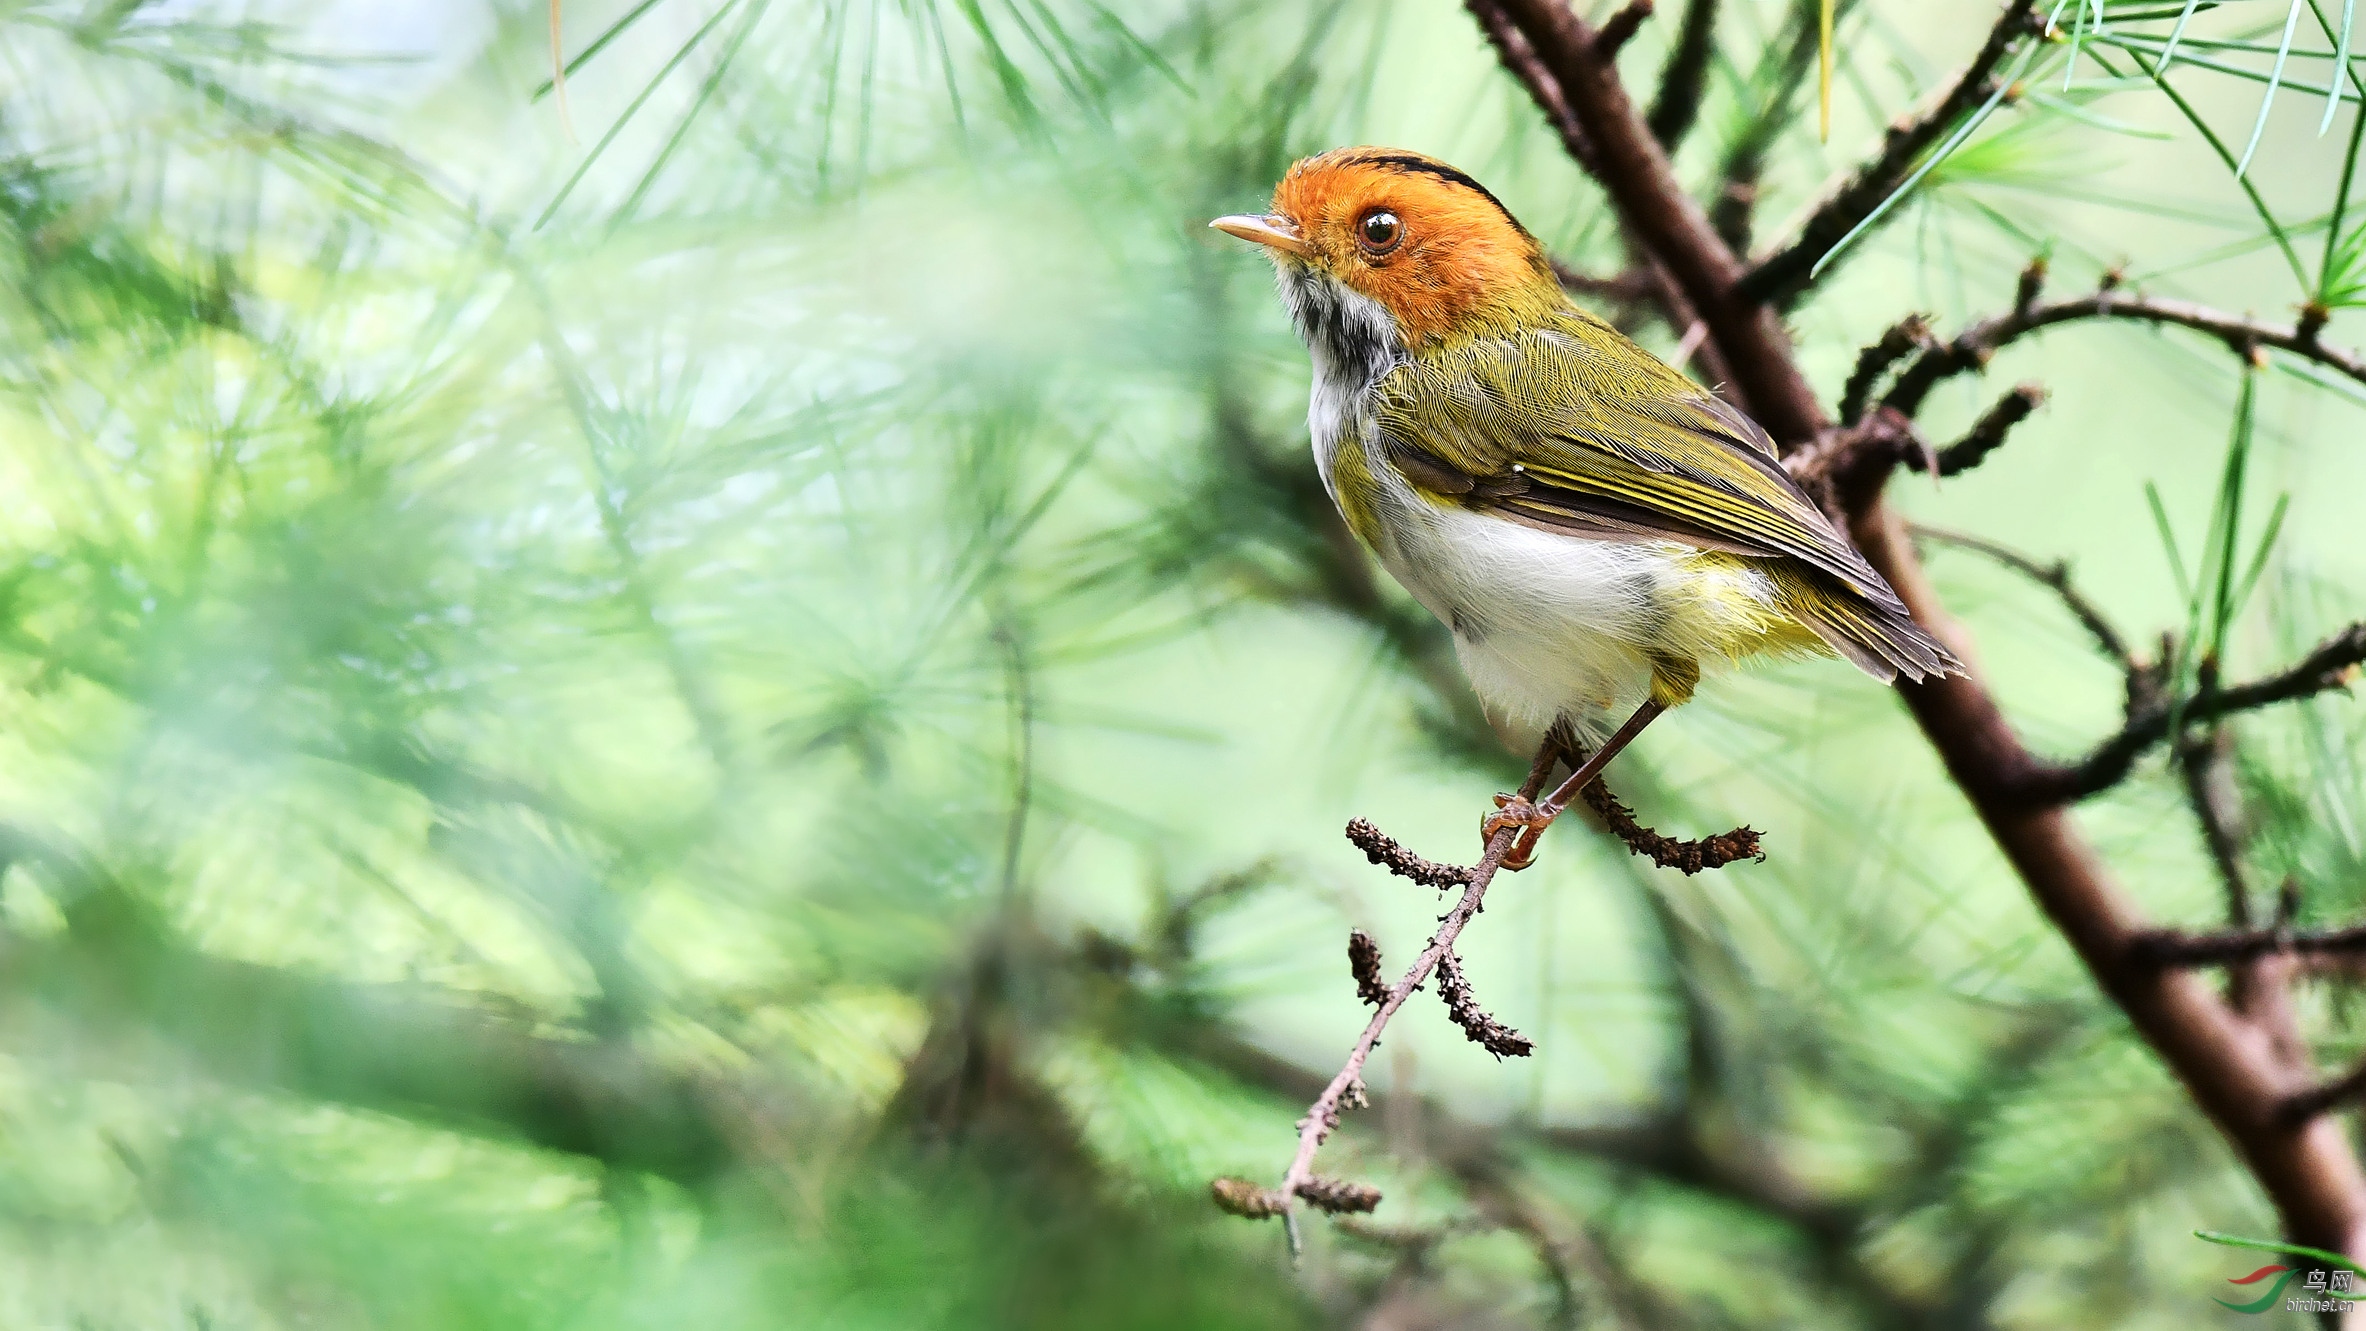 2023新江湾湿地生态观鸟拍鸟基地玩乐攻略,最佳的拍鸟地点。临水修建的...【去哪儿攻略】